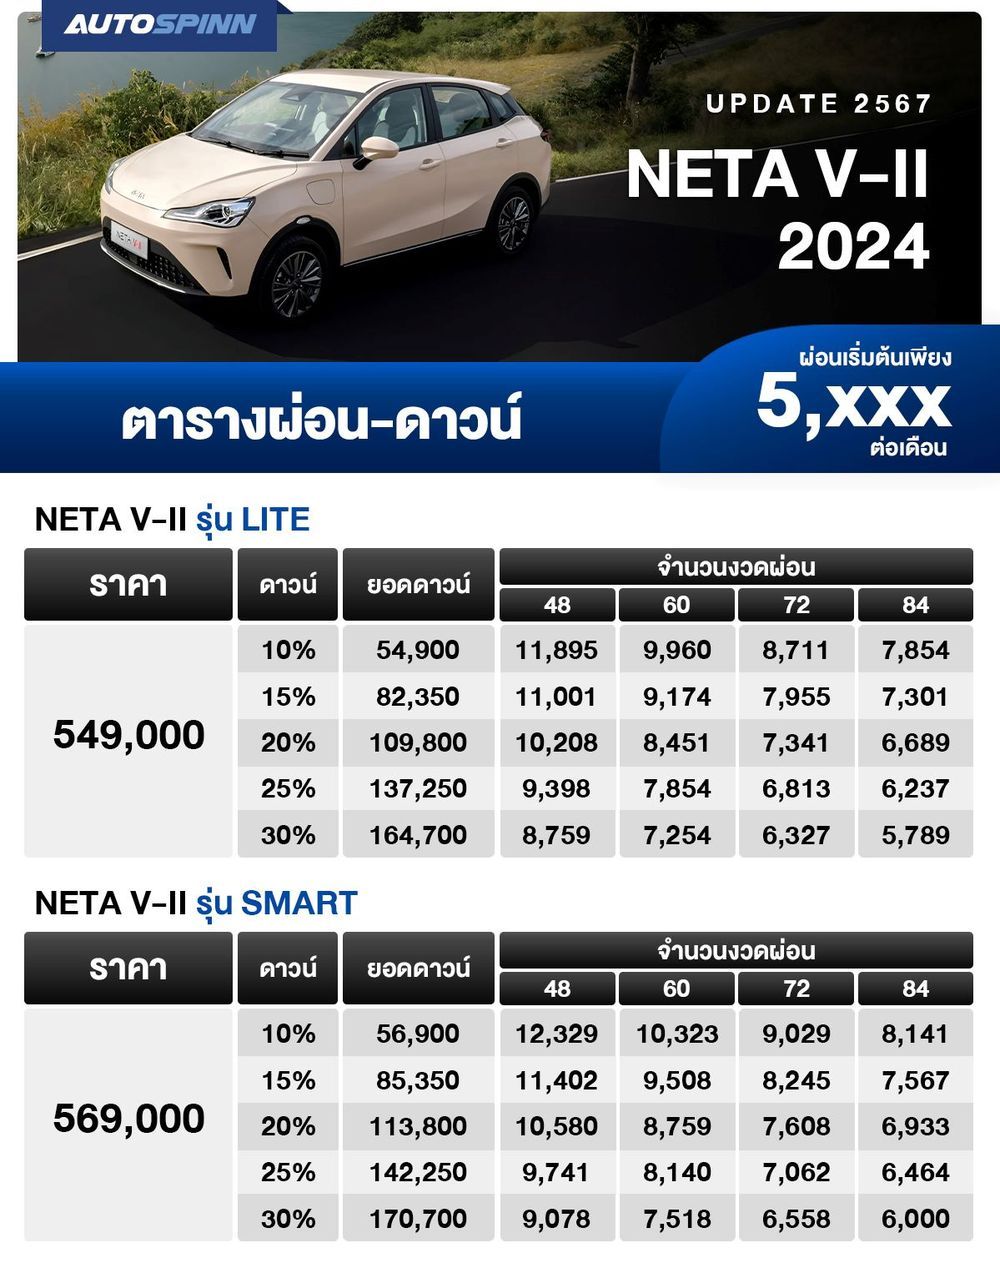 ตารางผ่อน NETA V-II 2024 รุ่นประกอบไทย